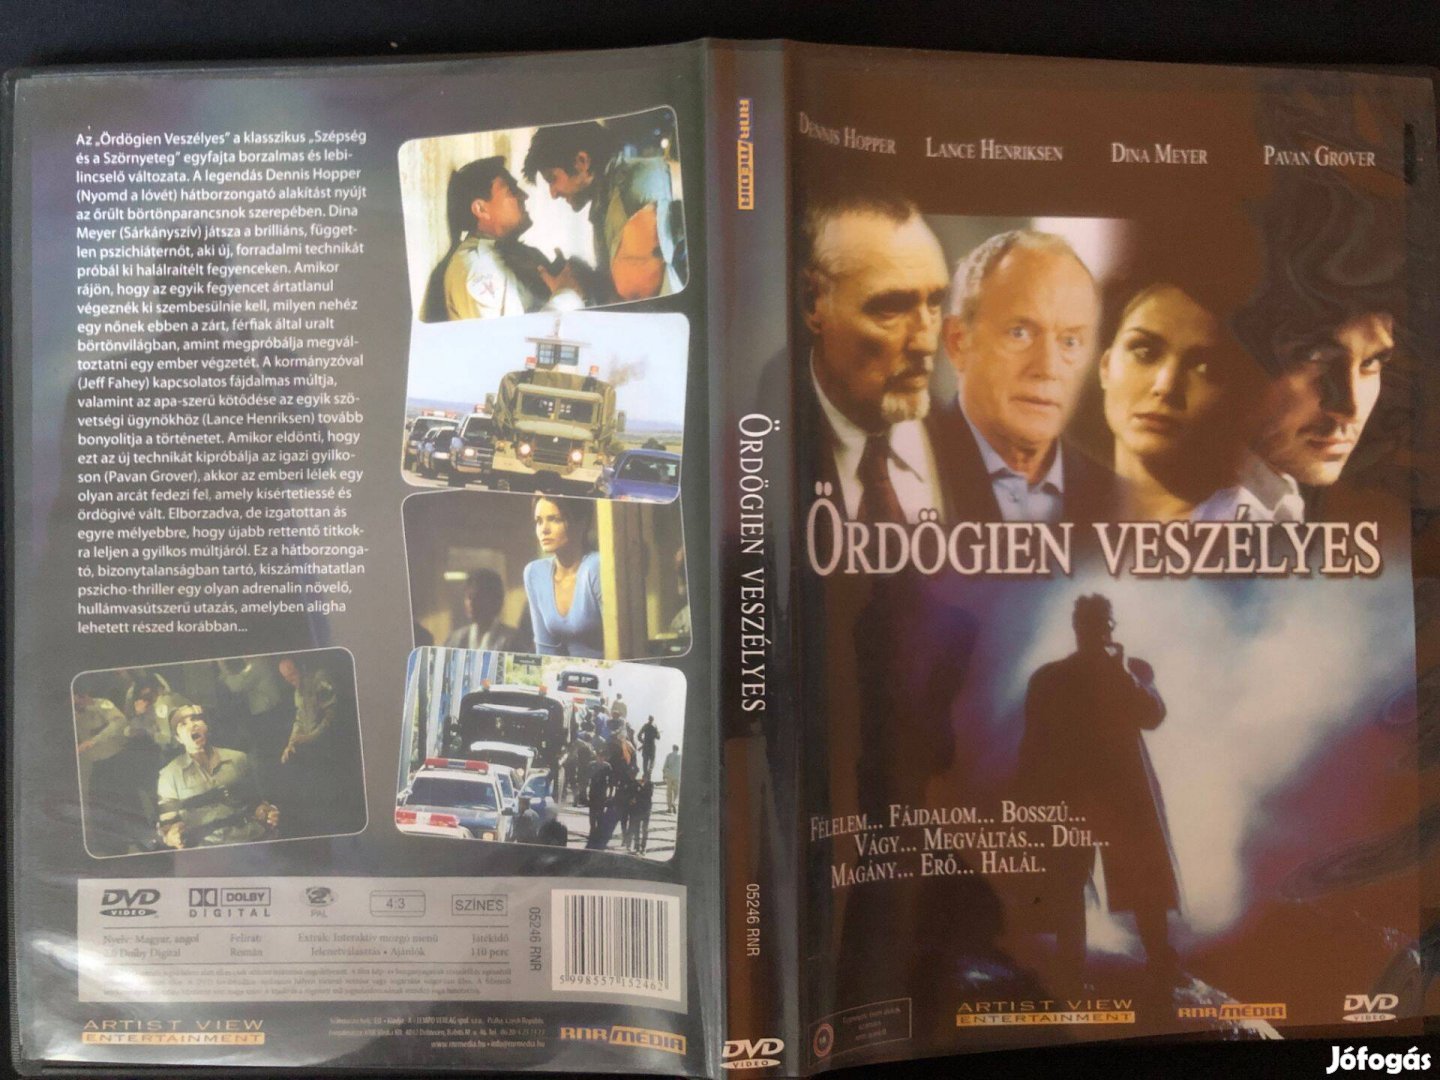 Ördögien veszélyes (karcmentes, Dennis Hopper) DVD